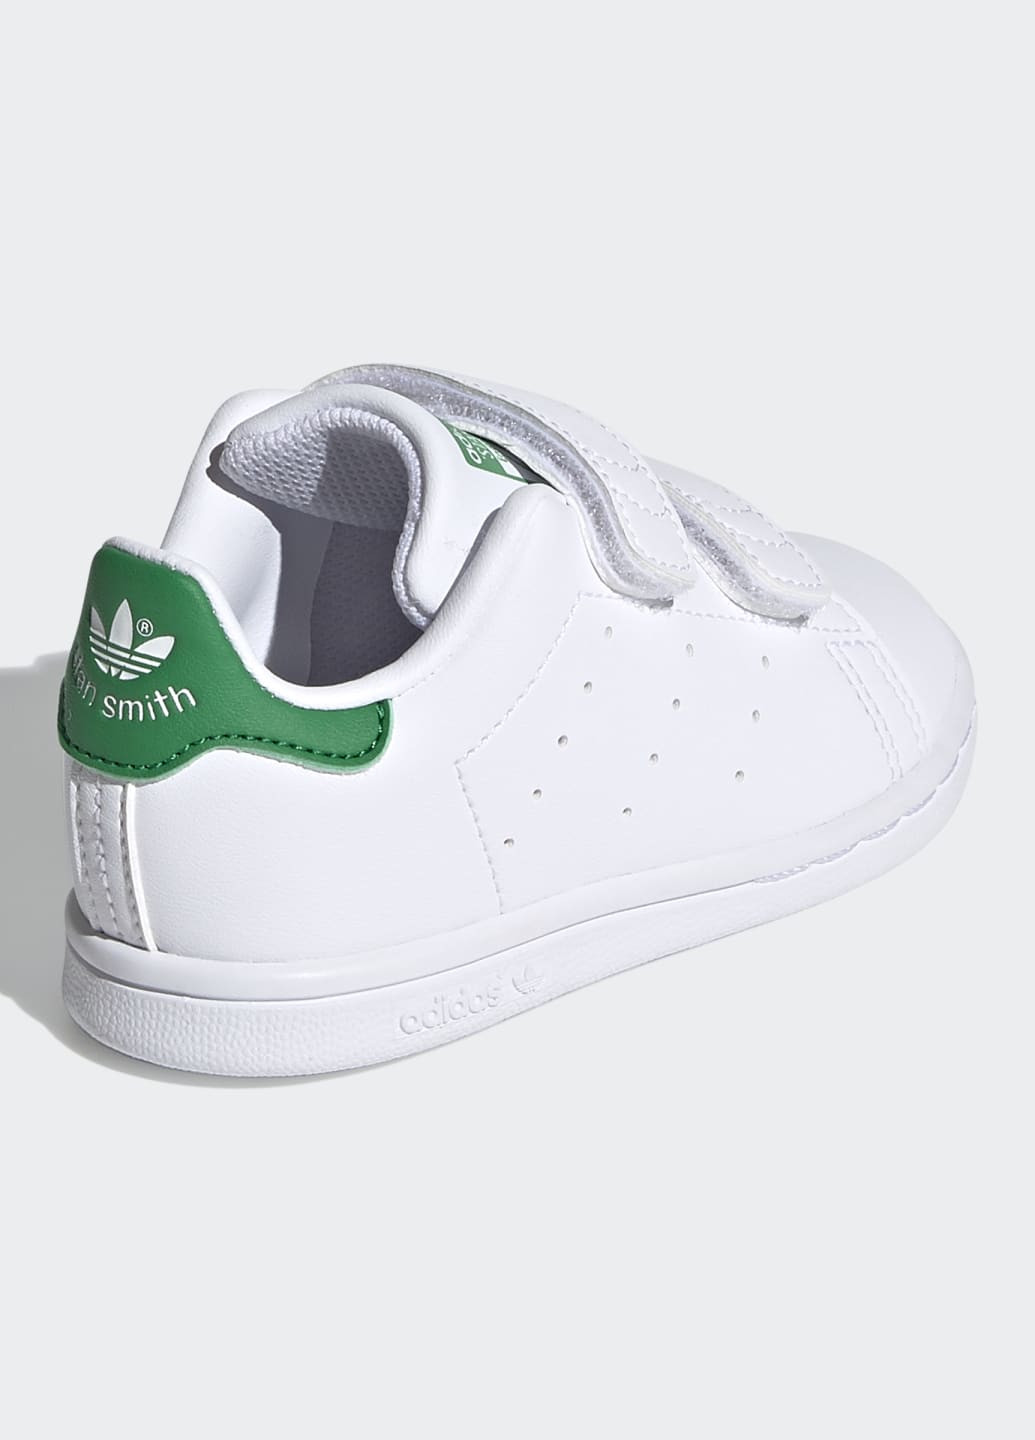 Белые кроссовки stan smith adidas